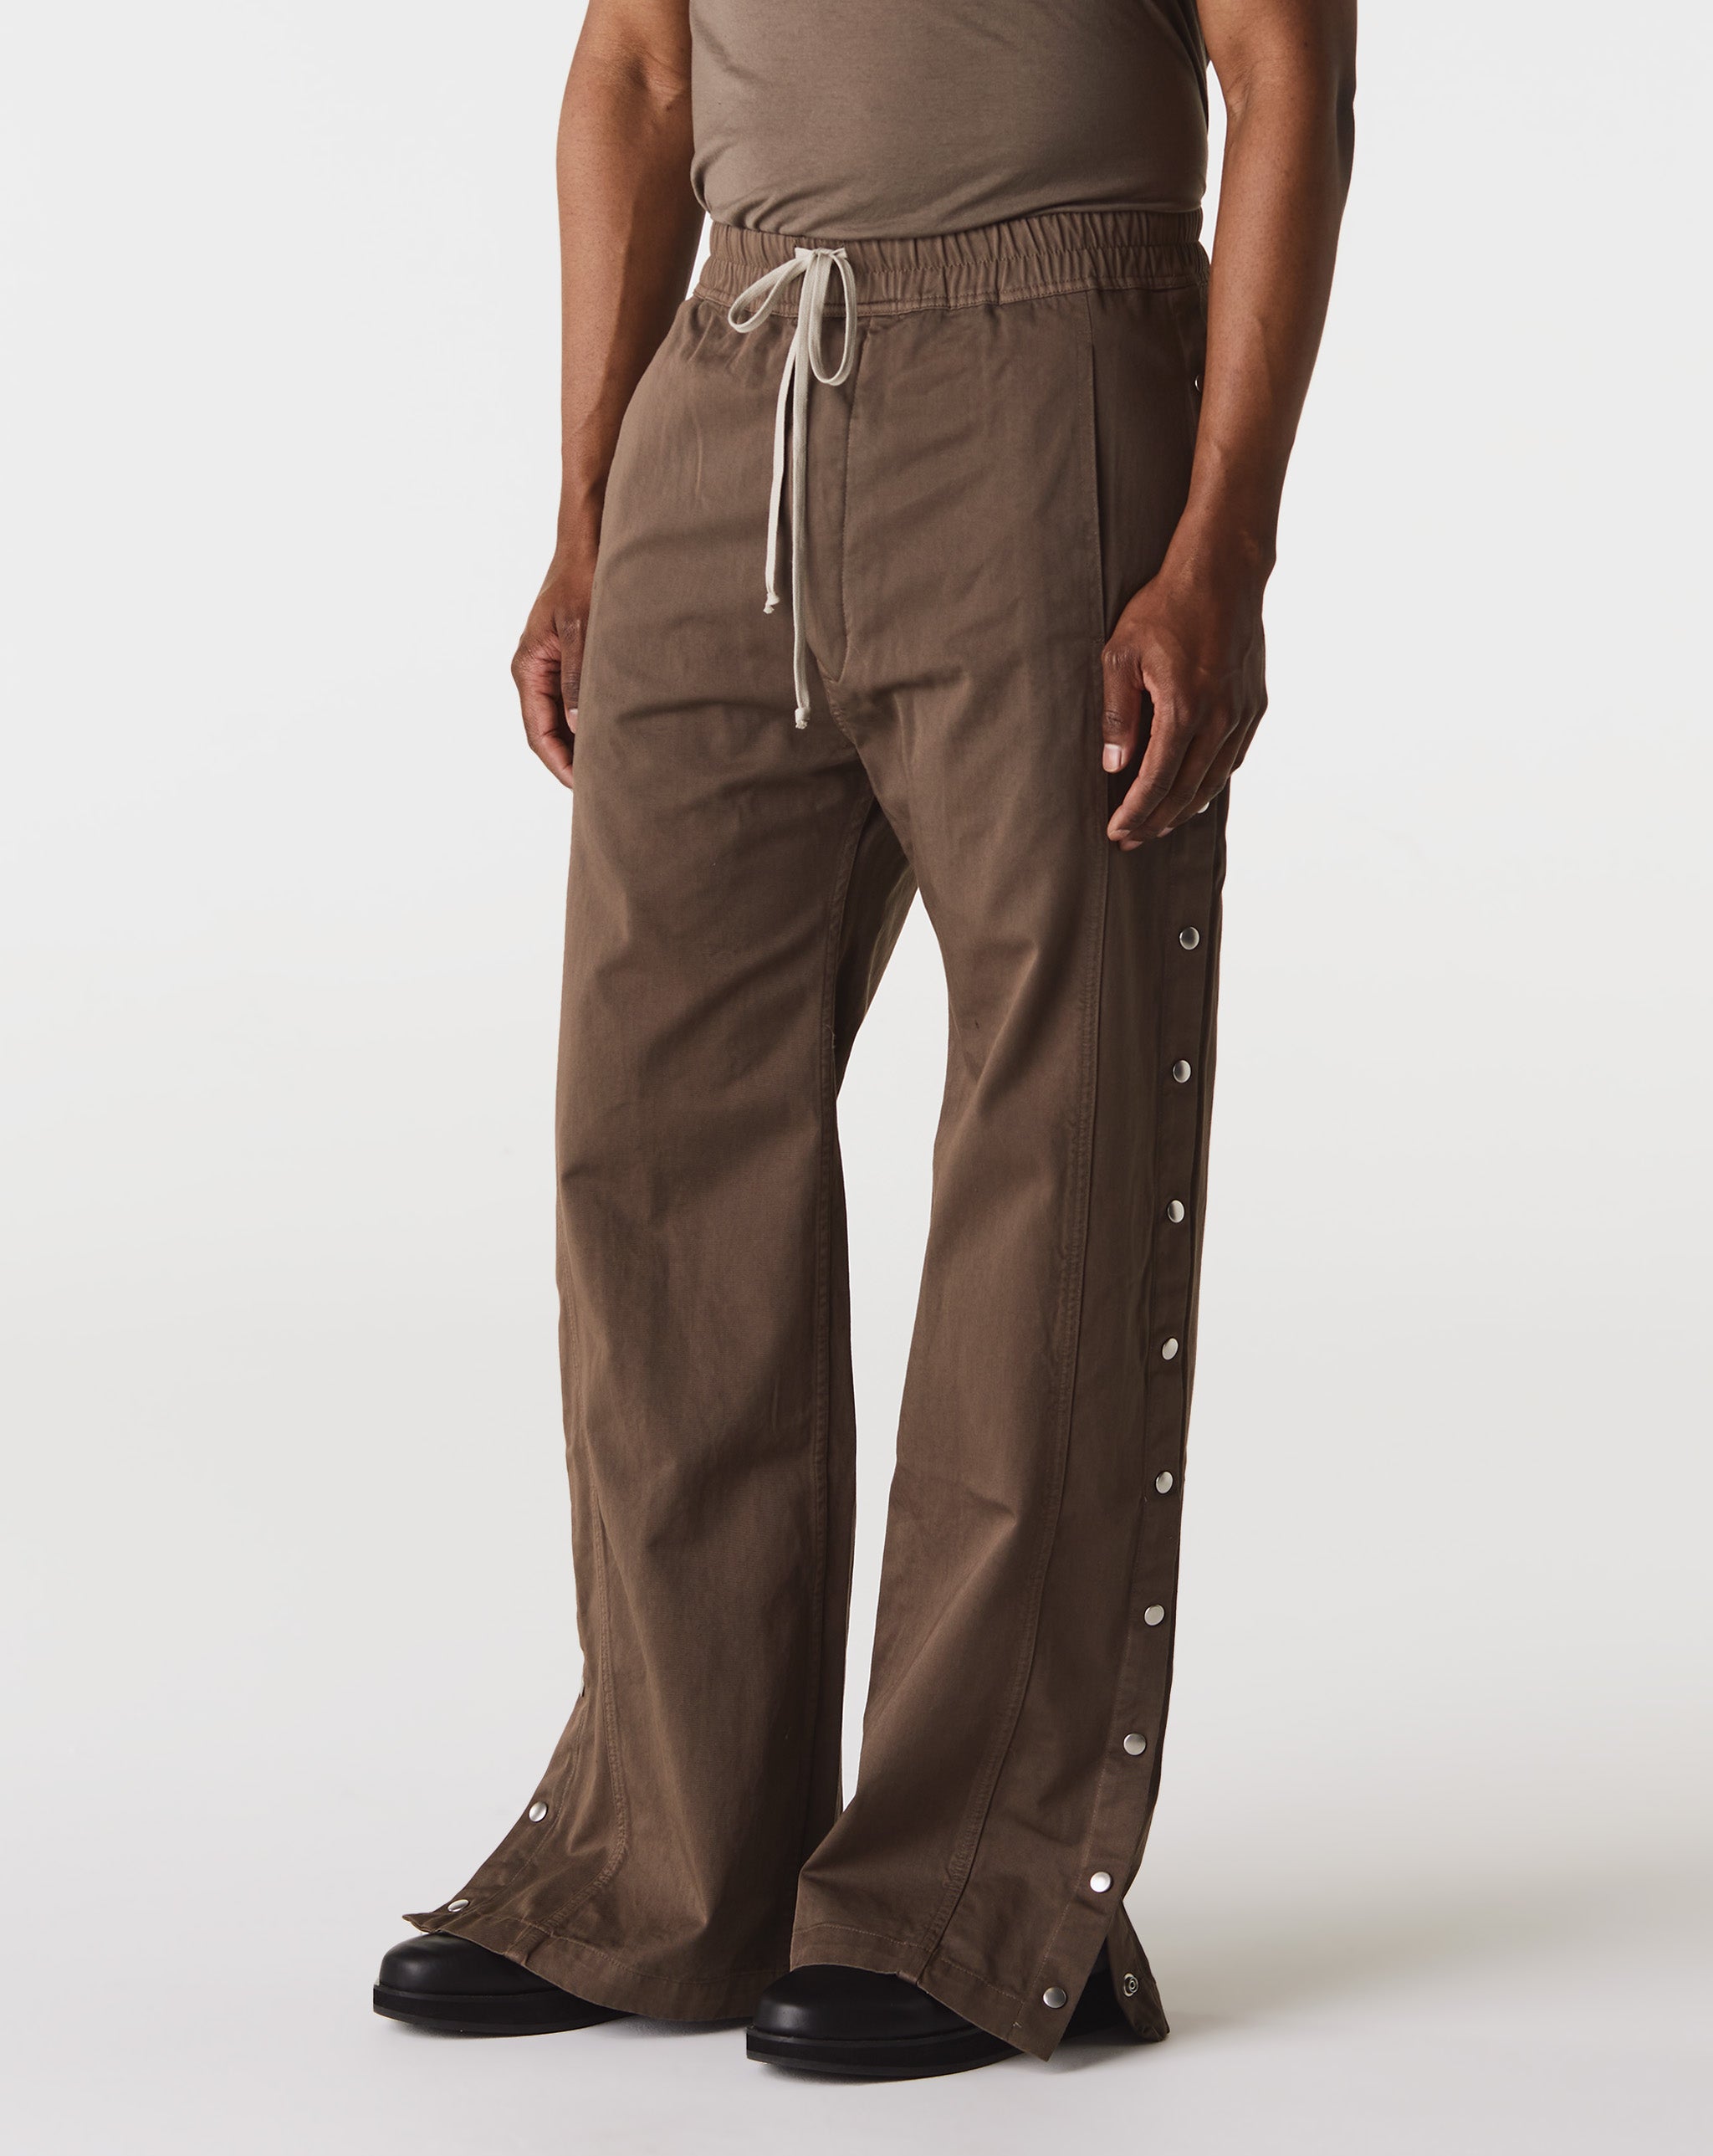 Camo Painter Pants Pusher Pants  - Cheap Cerbe Jordan outlet